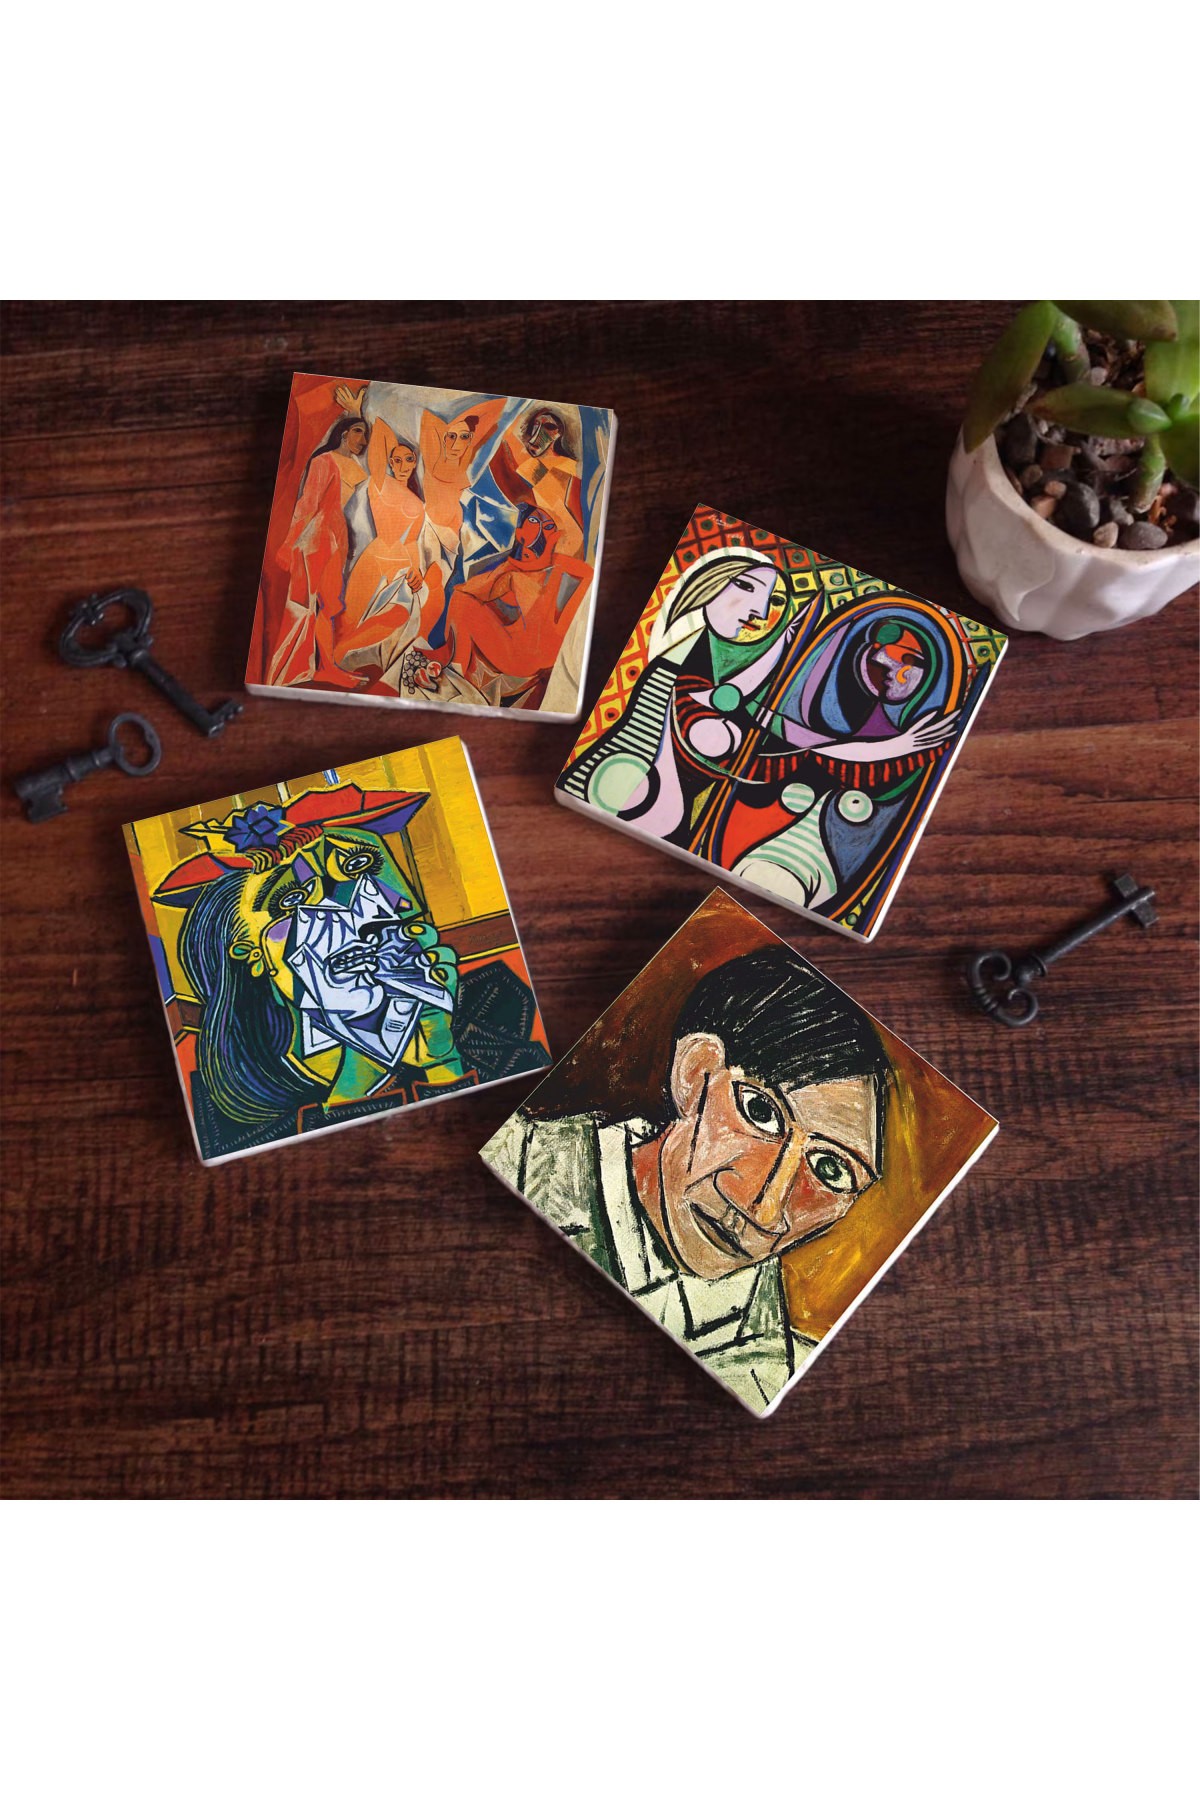 Picasso Ağlayan Kadın, Avignonlu Kızlar, Ayna Karşısındaki Kız, Otoportre Taş Bardak Altlığı Masaüstü Koruyucu Altlık 4 Parça Set 10x10cm Stone Coasters